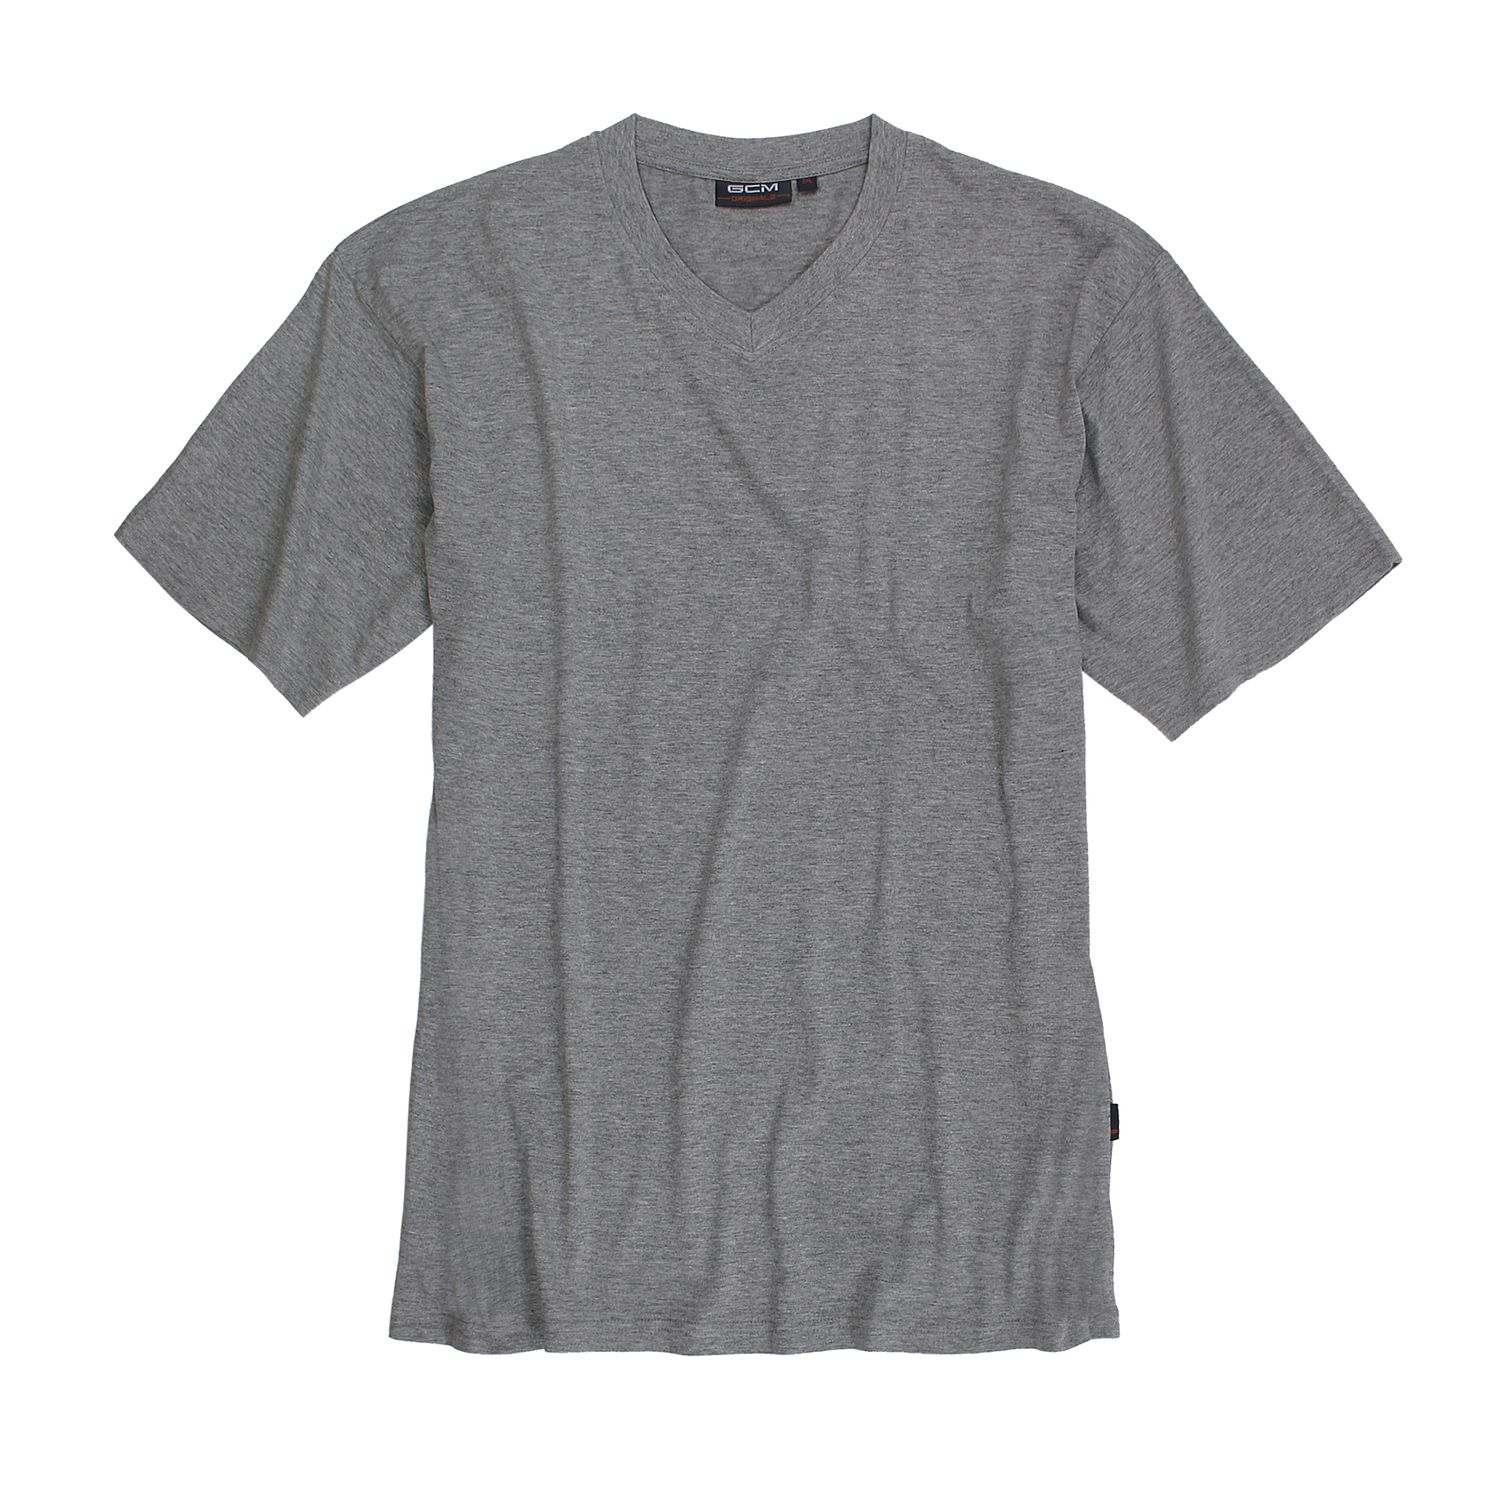 T-shirt gris chiné col V de GCM Originals grandes tailles jusqu'au 6XL